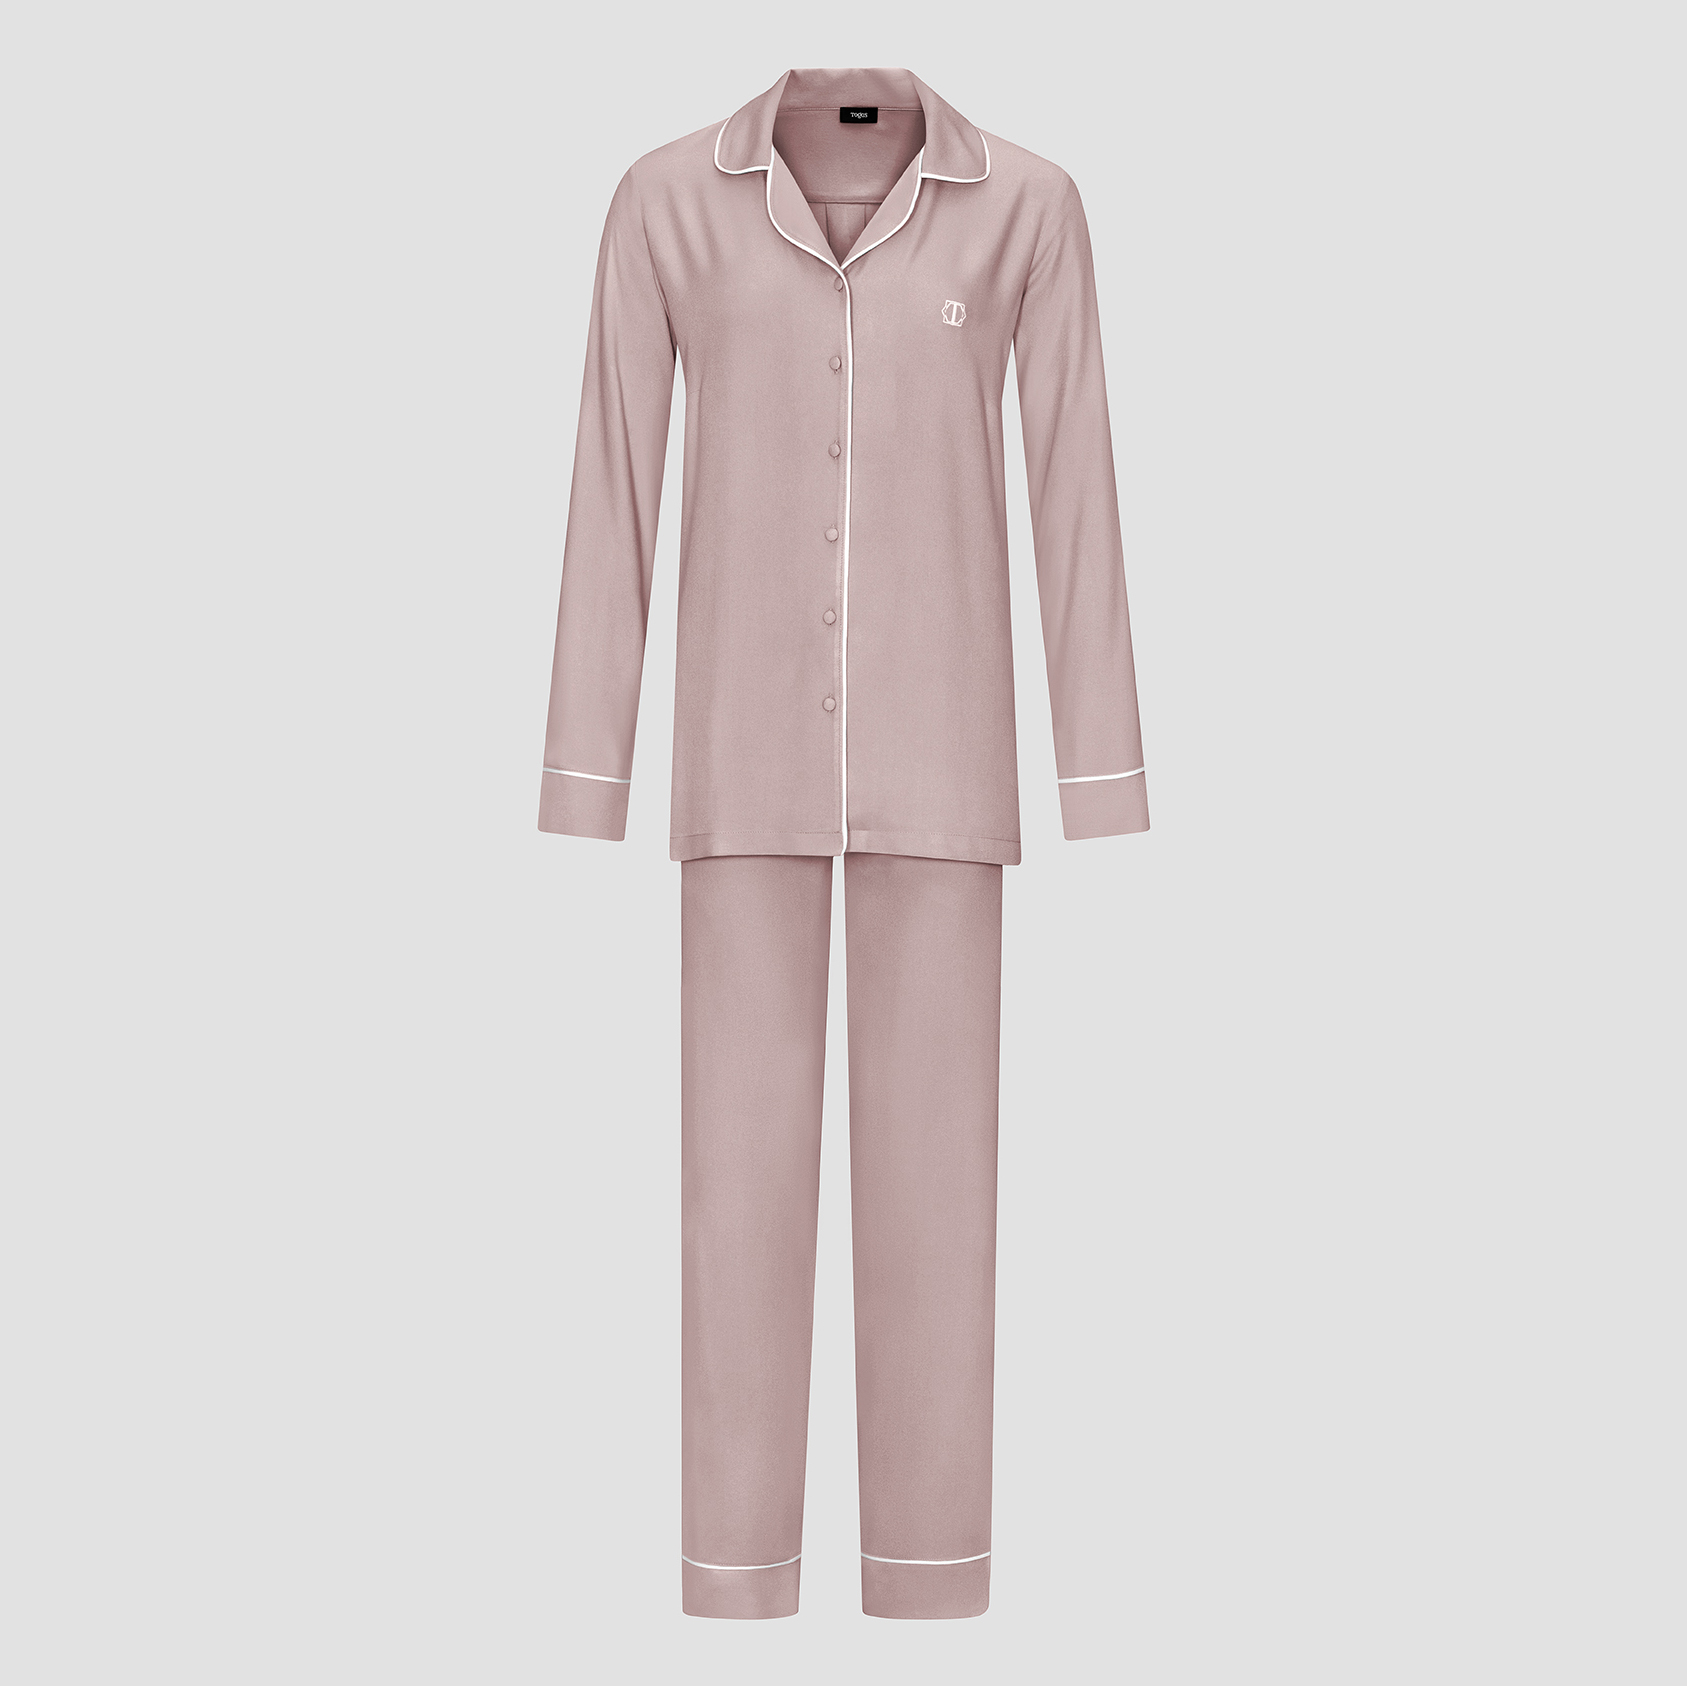 Пижама женская Togas Рамель розовая 2 предмета пижама рубашка брюки